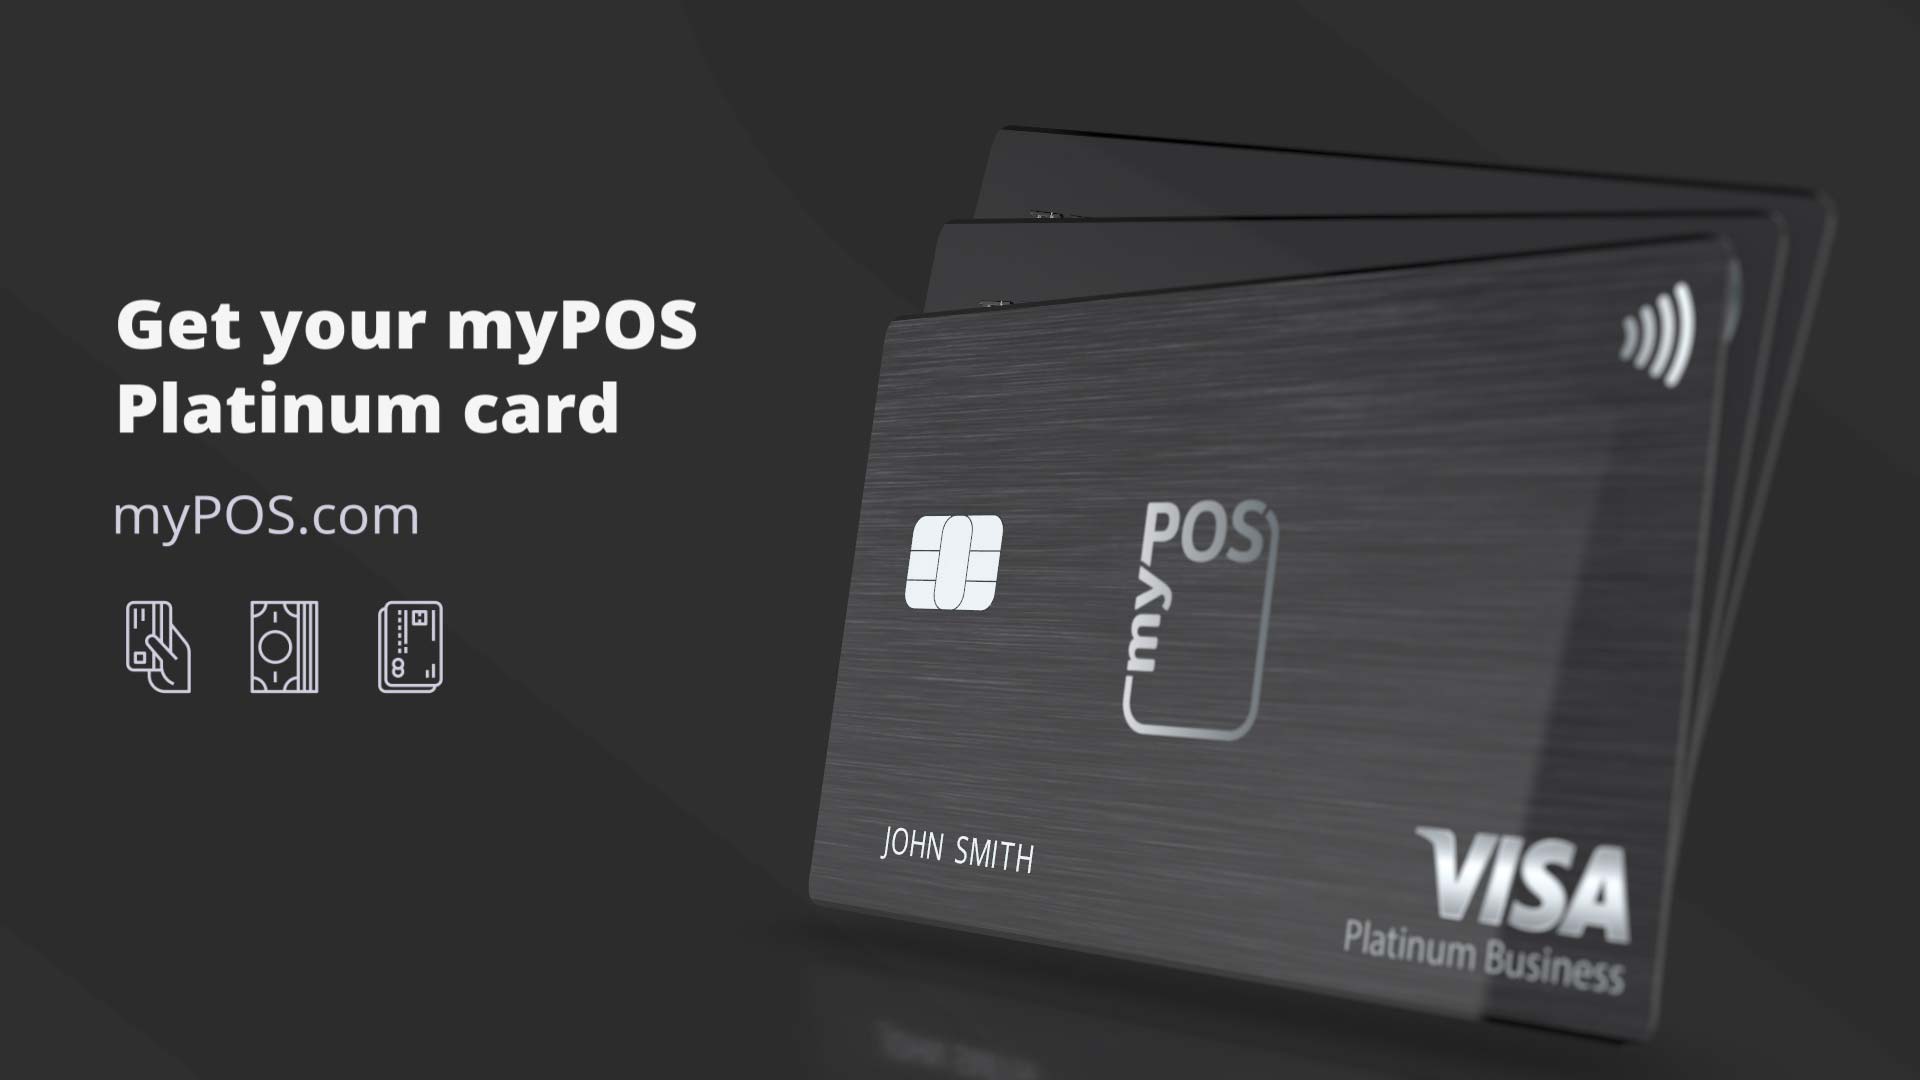 Die neuen myPOS Visa Platinumkarten